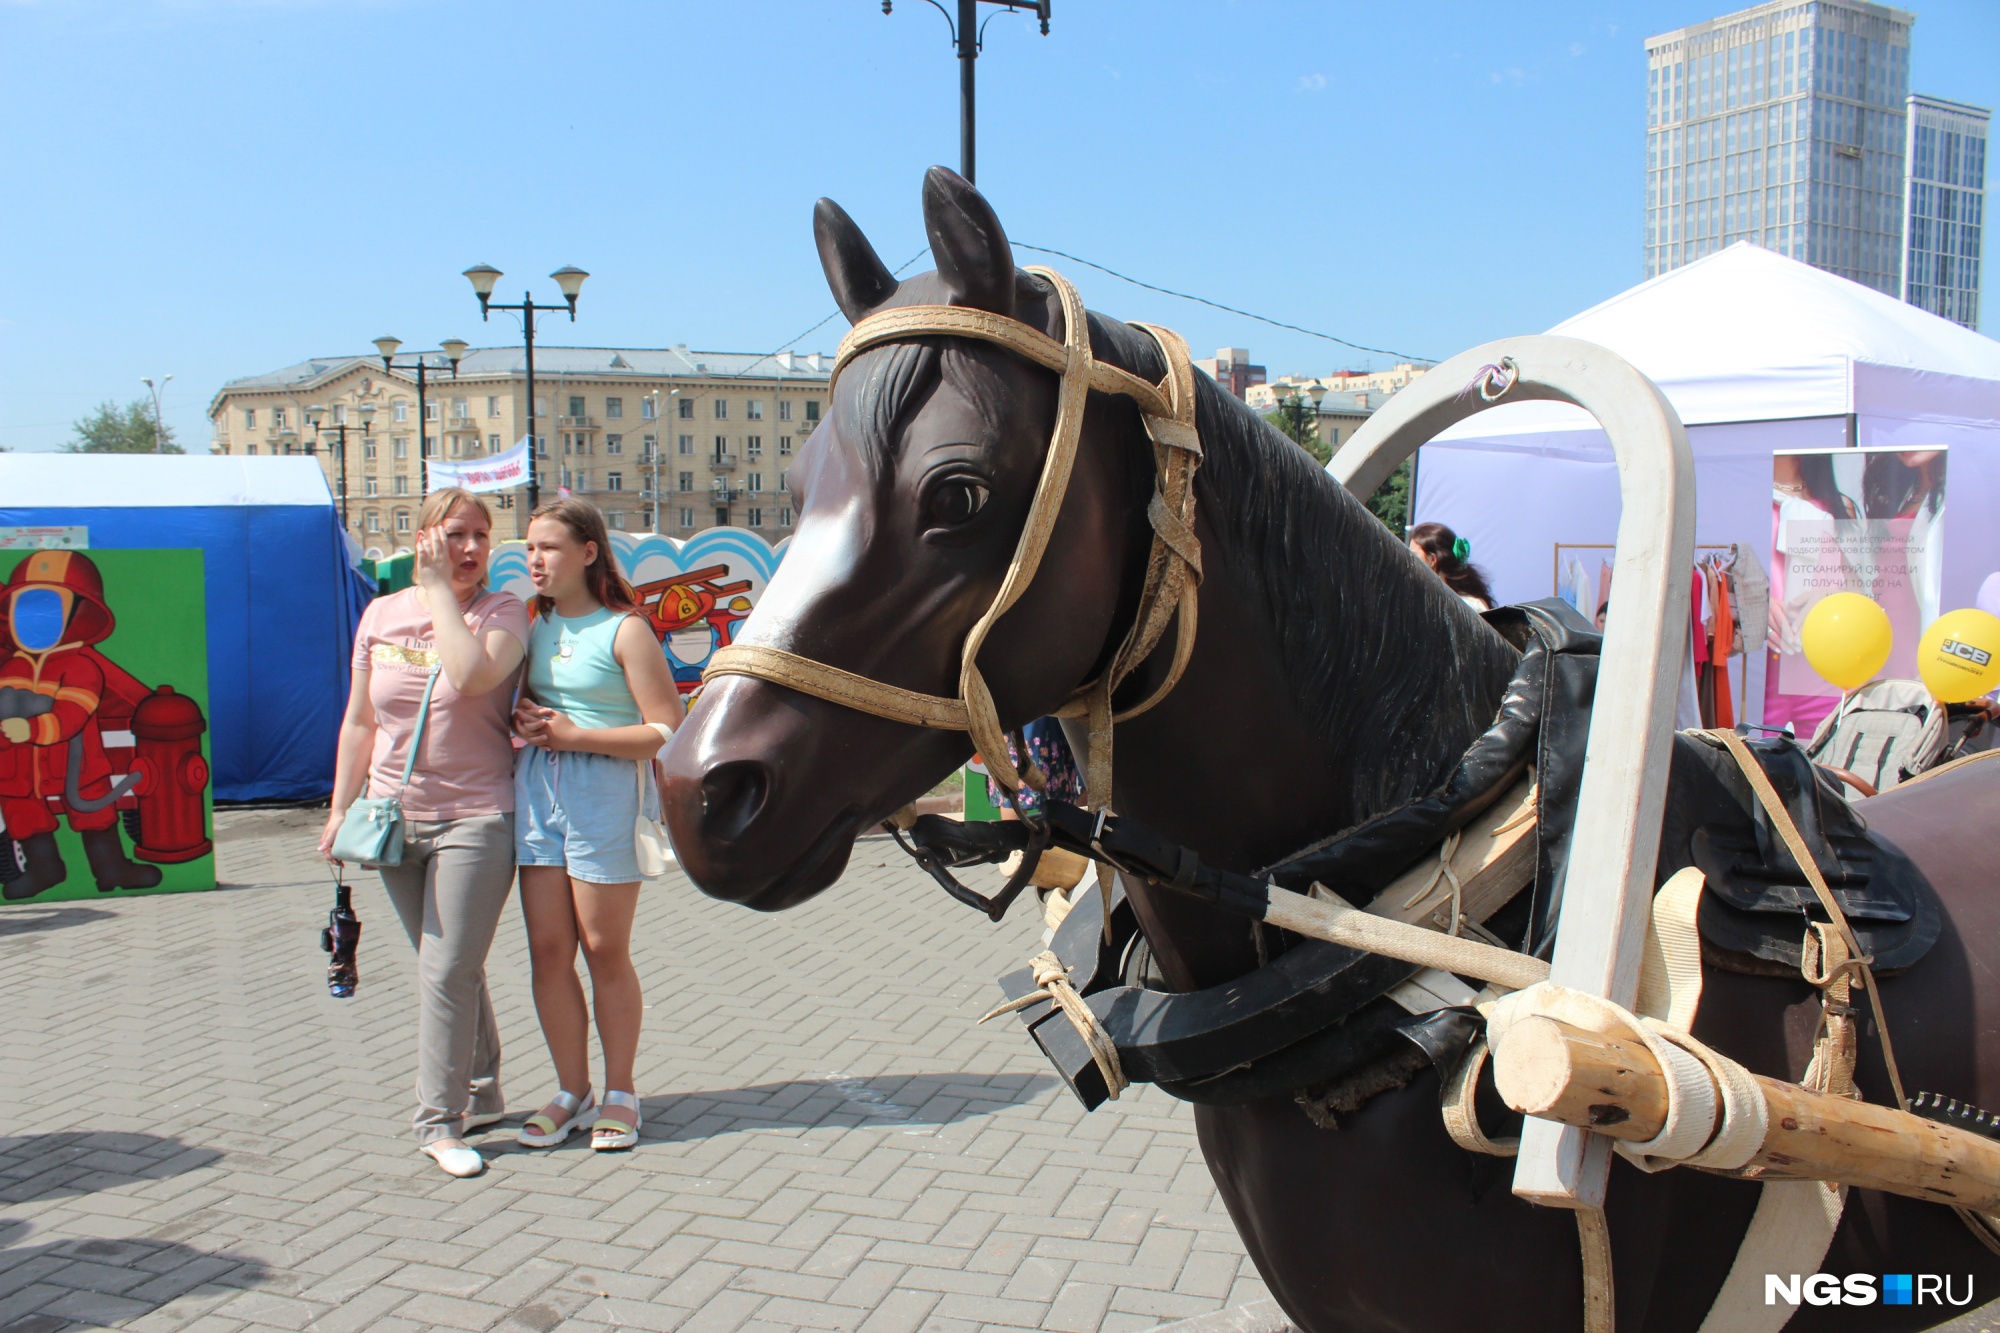 Танцующие тракторы, конь в противогазе и квас по 100 рублей — самое интересное с выставки достижений Новосибирска